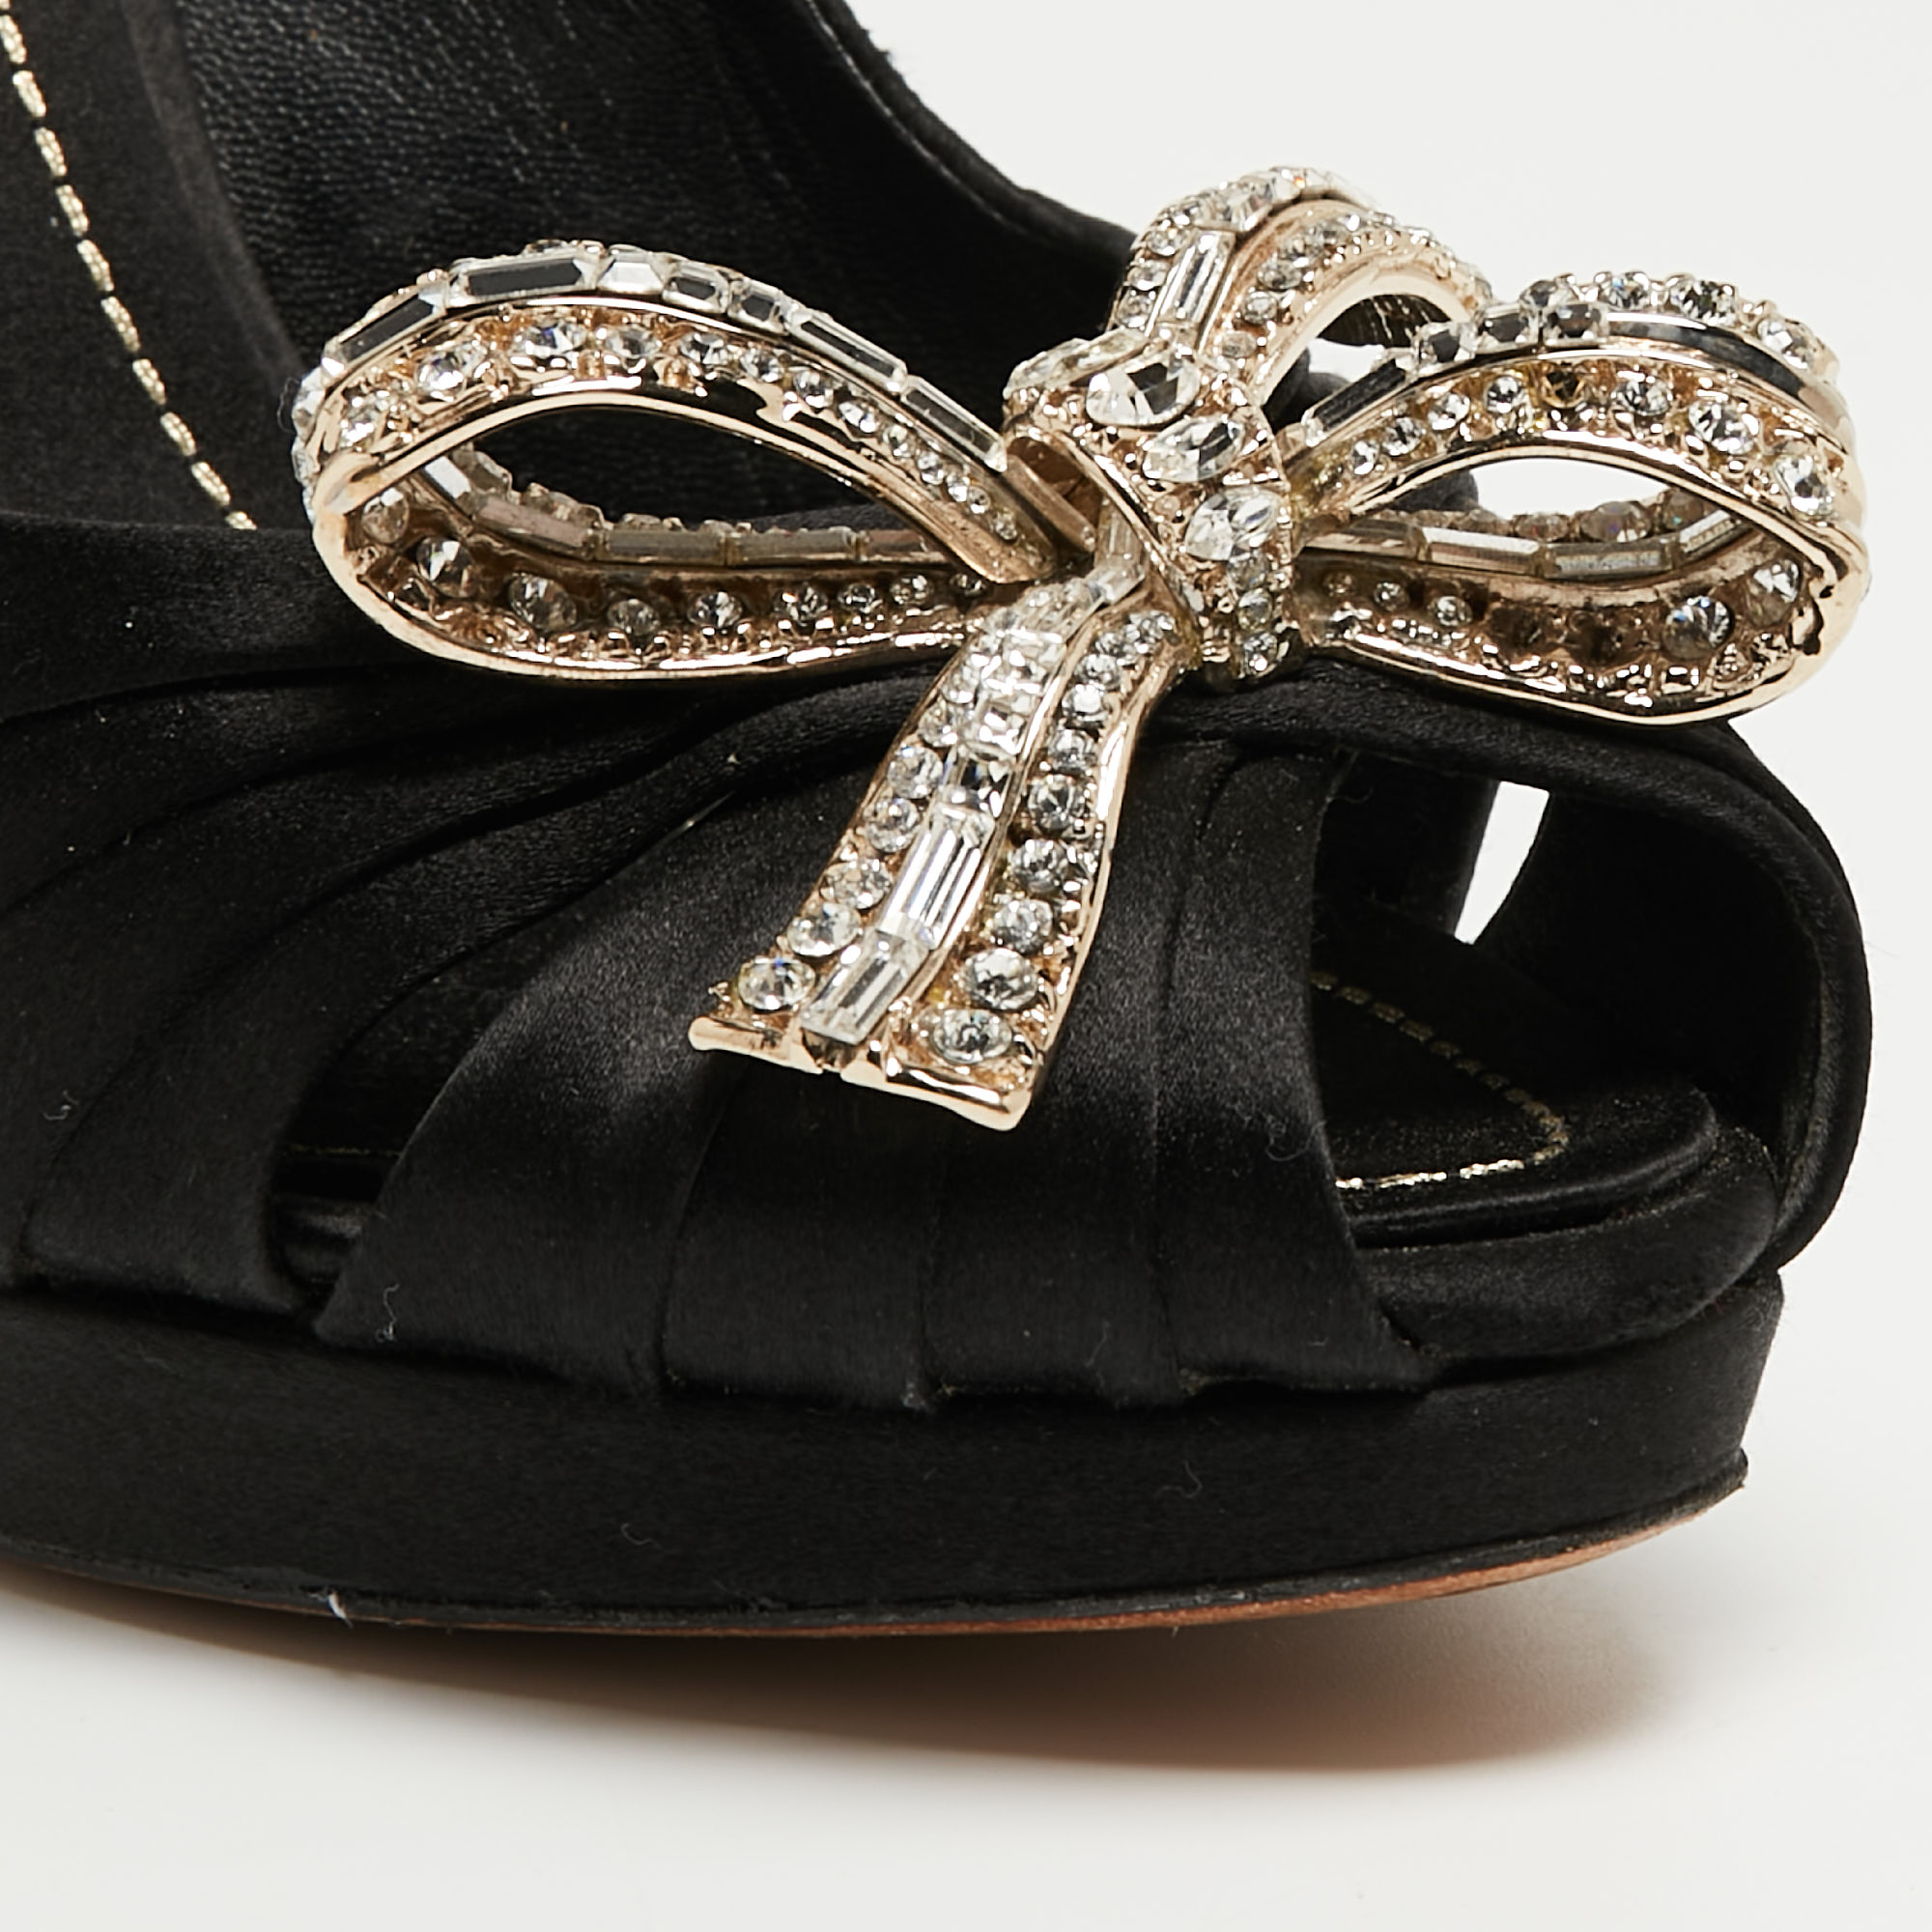 Dior Black Satin Crystal Embellished Peep Toe Platform Pumps Size 37